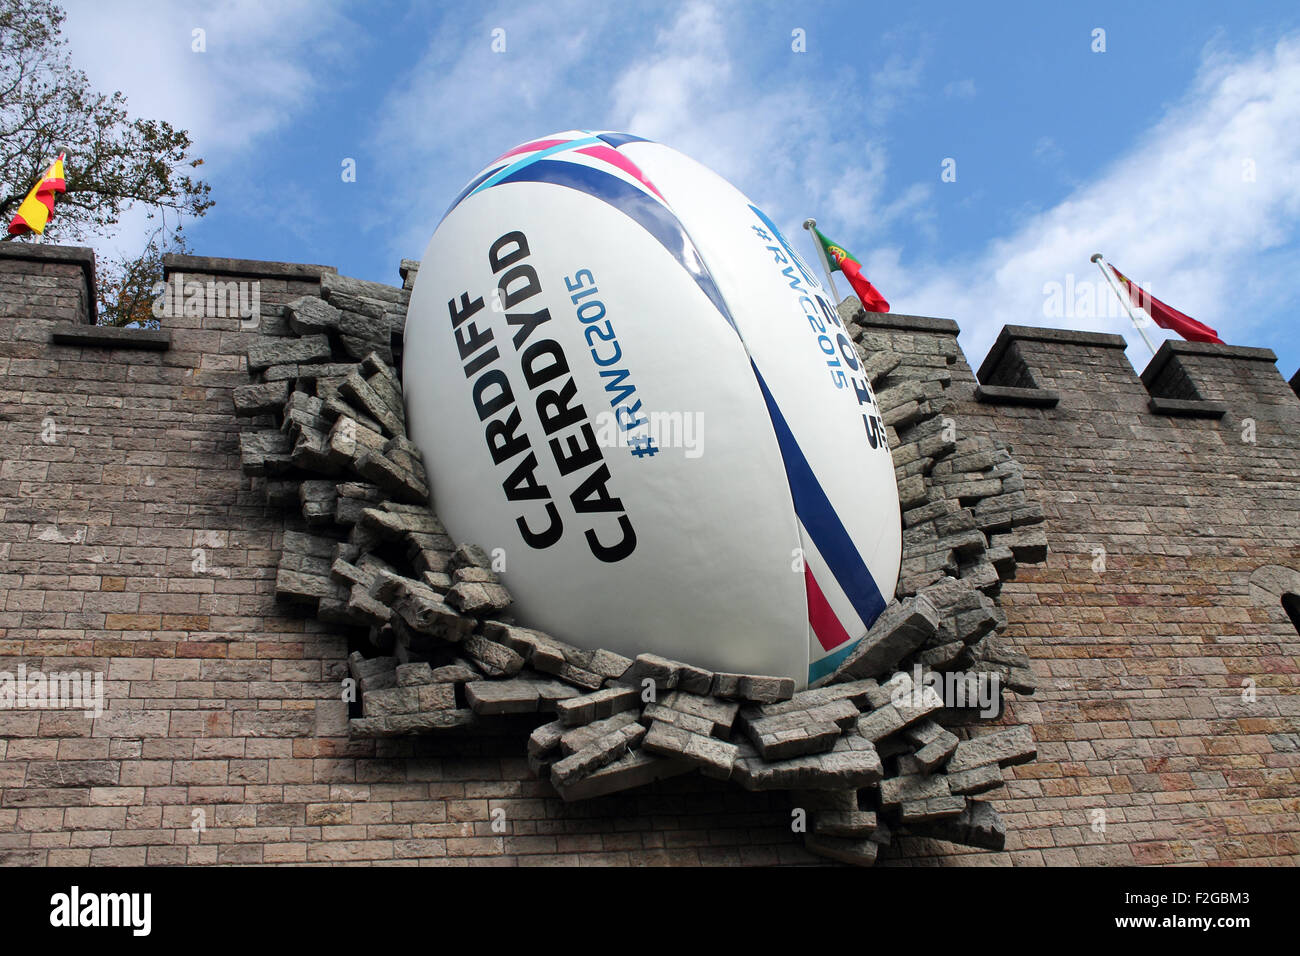 Ballon de rugby Géant écrase dans le château de Cardiff pour marquer le  début de la Coupe du Monde de Rugby 2015, le vendredi 18 septembre 2015  Photo Stock - Alamy